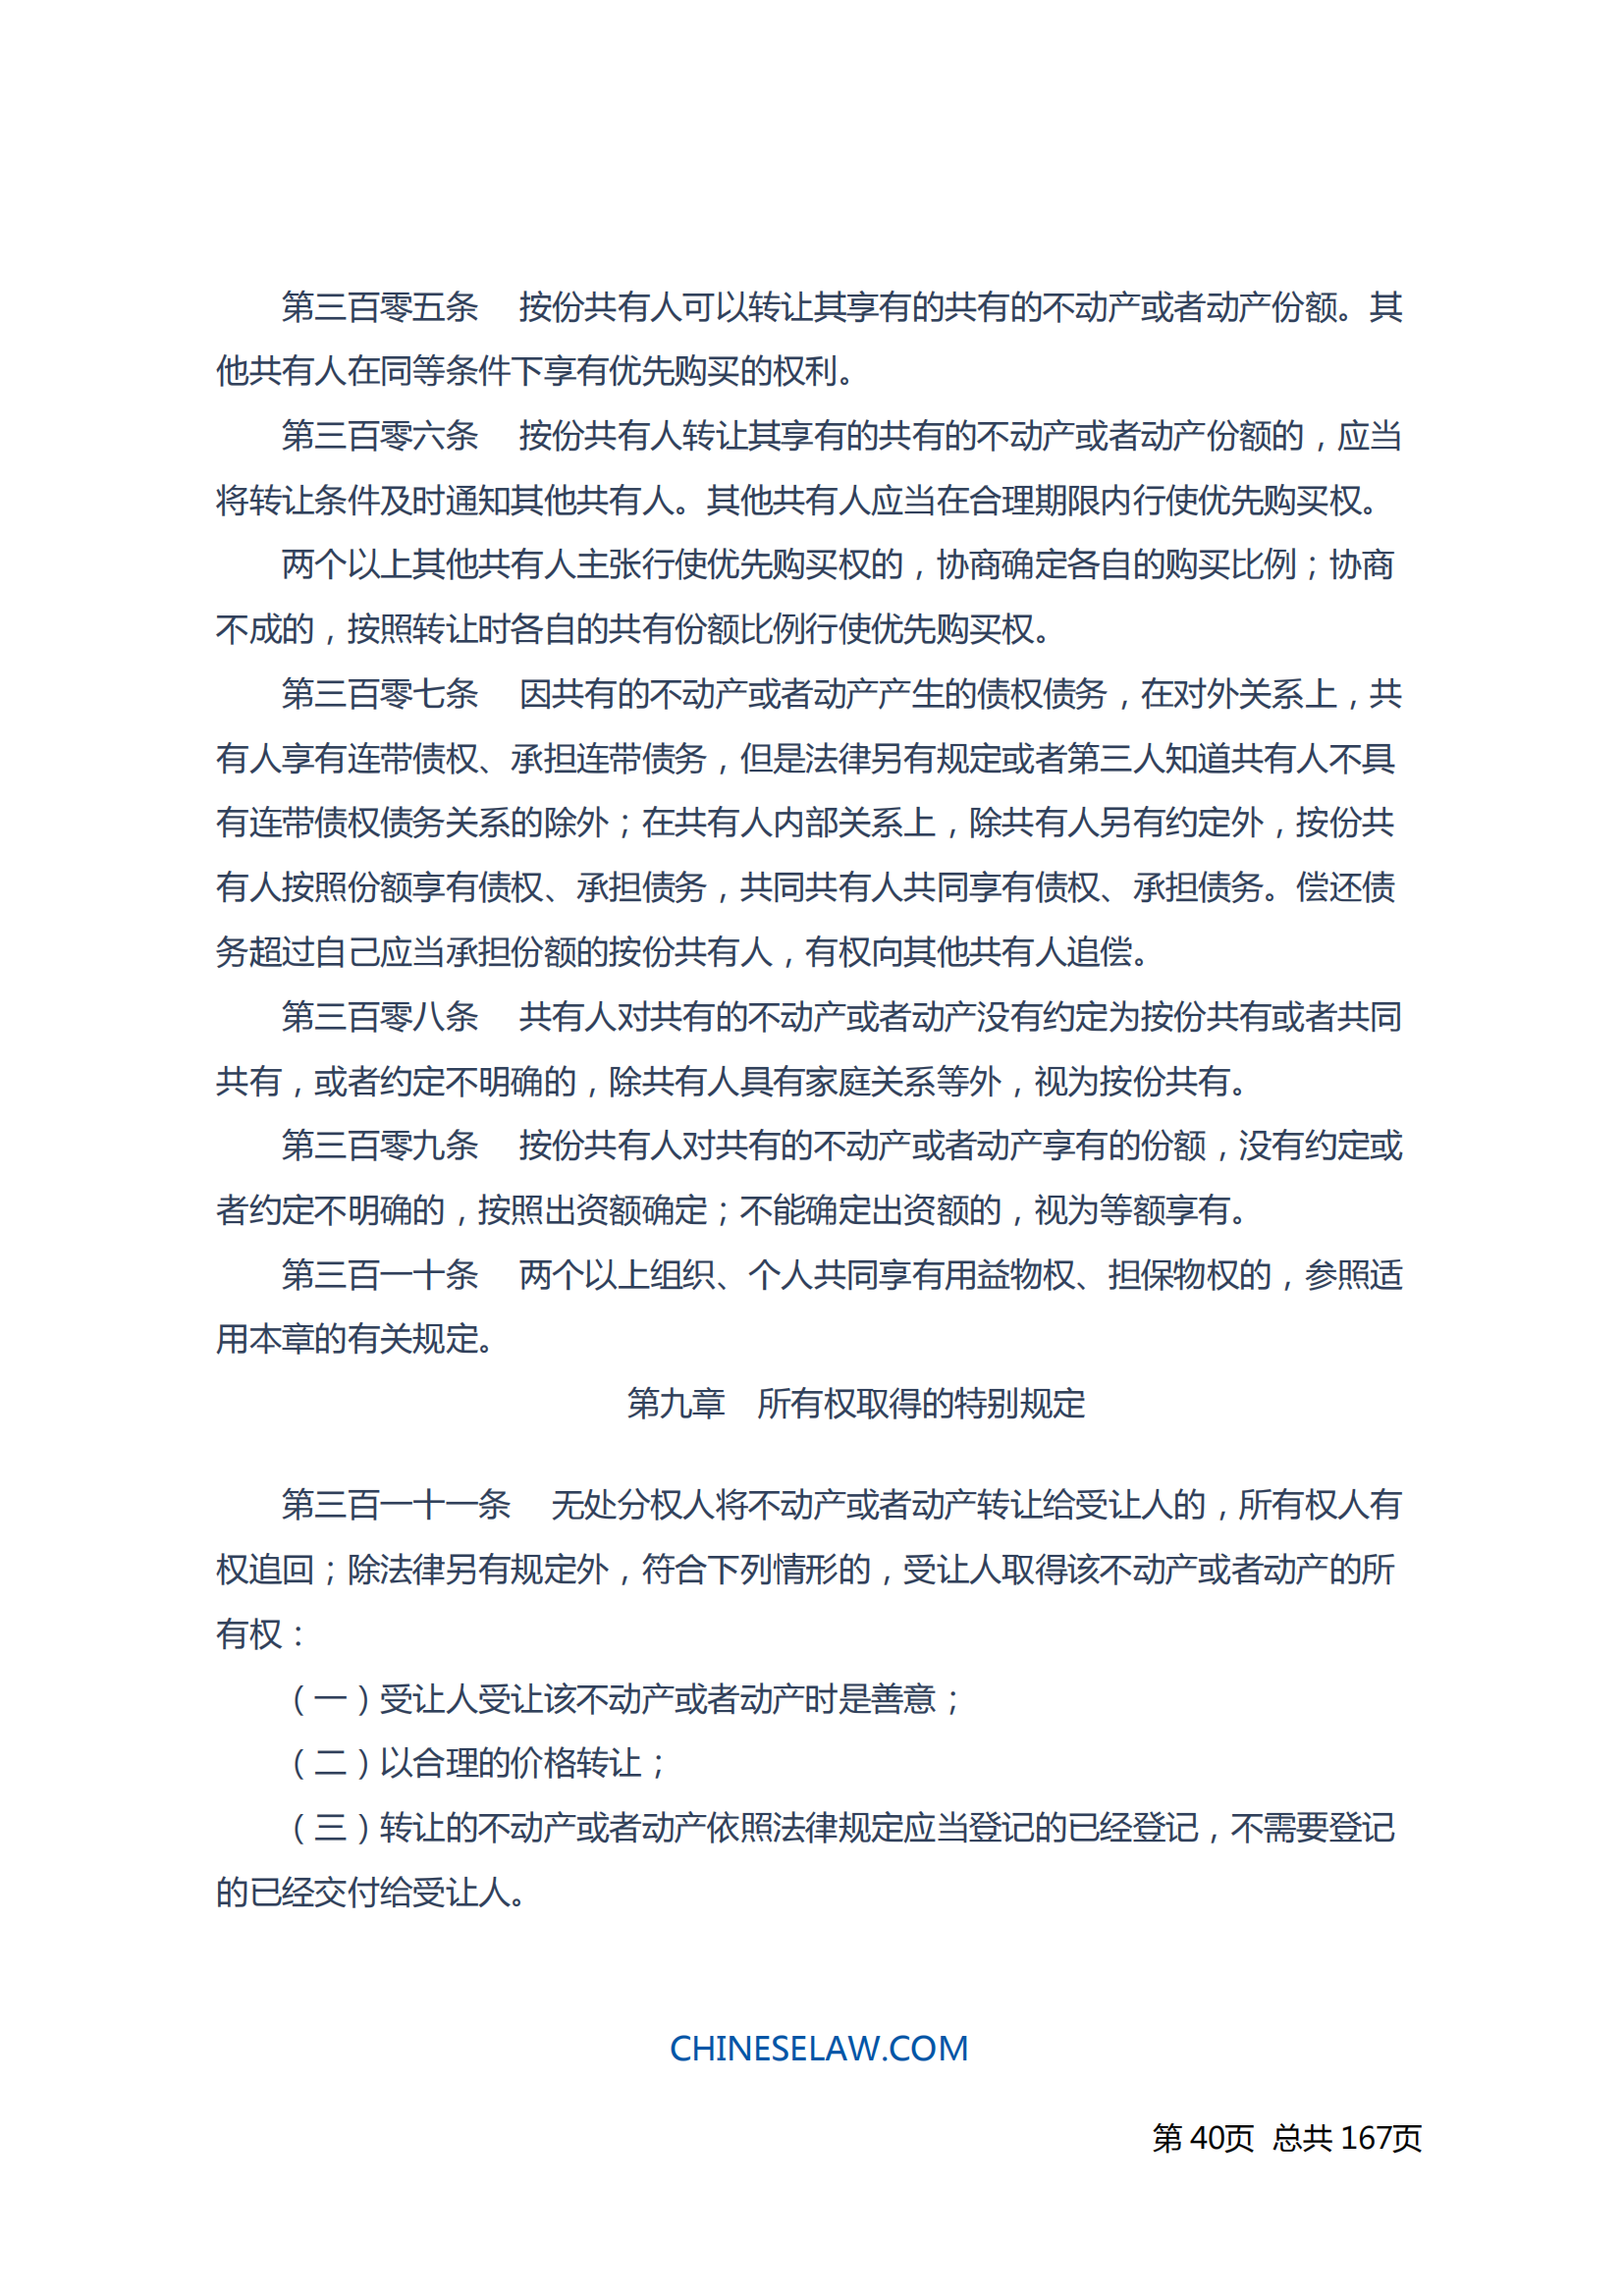 中华人民共和国民法典_39